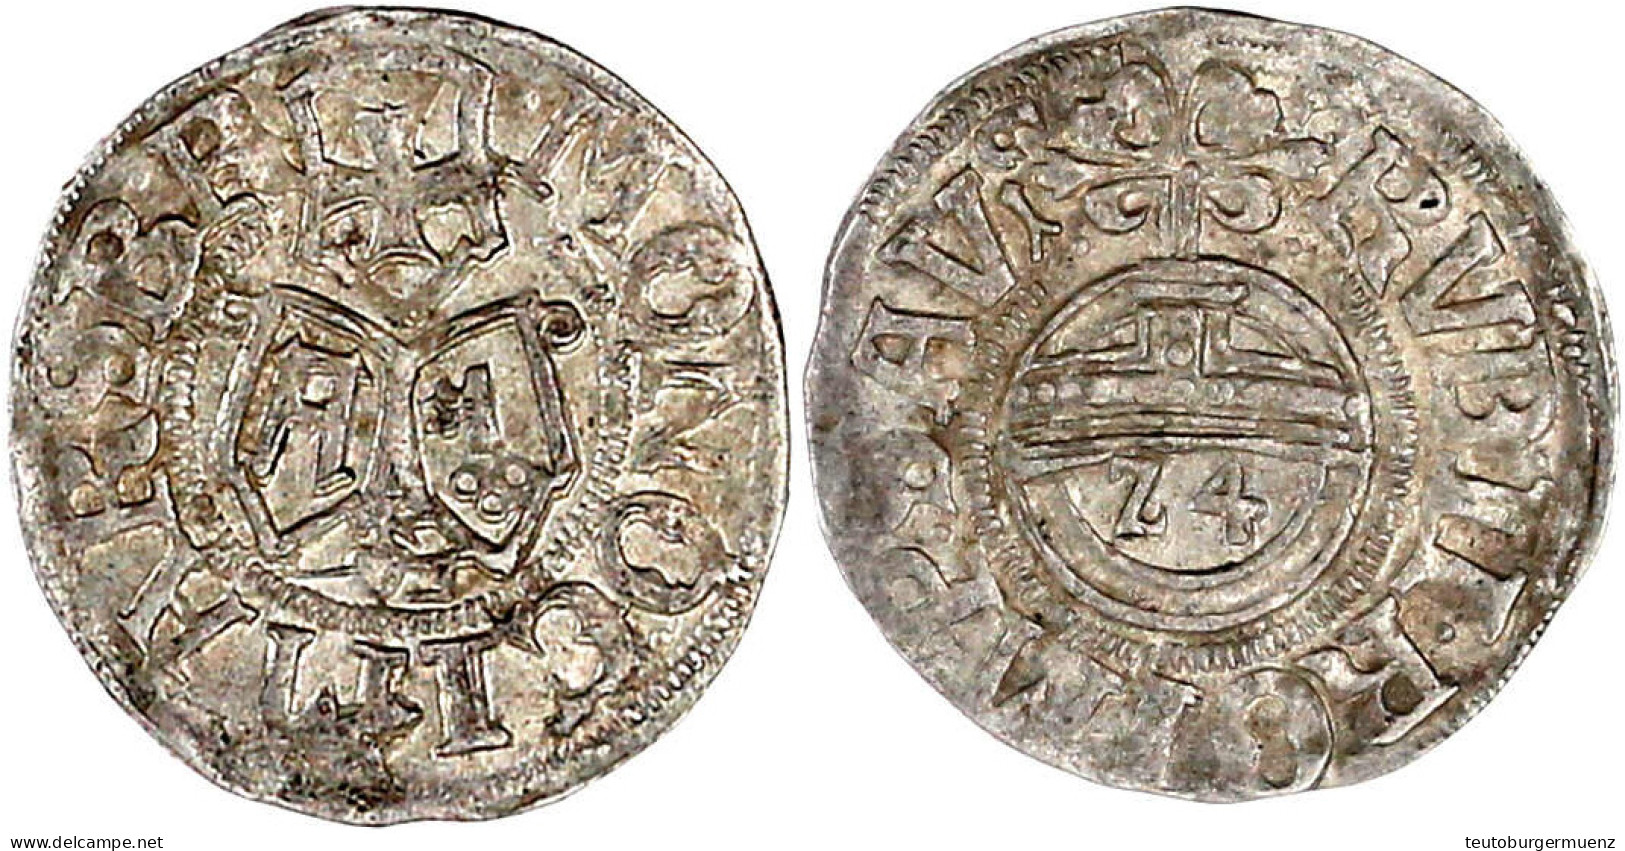 Reichsgroschen (1/24 Taler) 1606, Marsberg, Mzm. Jakob Pfahler. Jahreszahl 16-6 (liegende Sechsen). Vorzüglich, Selten,  - Gold Coins